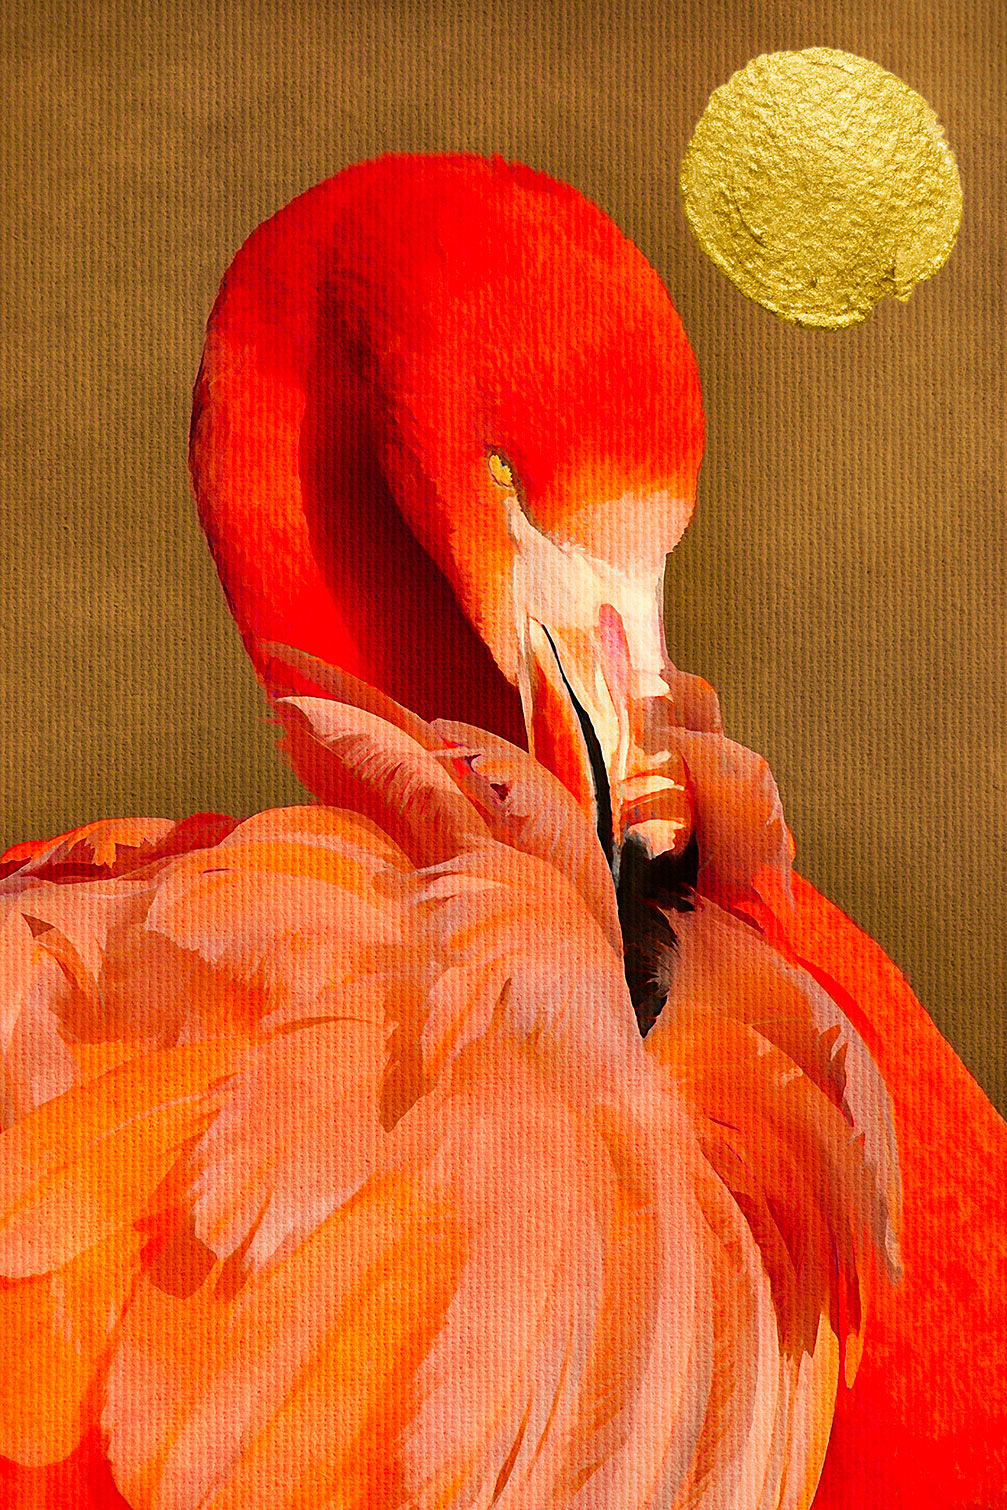 Hexoa Cuadro de animales flamencos impresión sobre lienzo 60x90cm